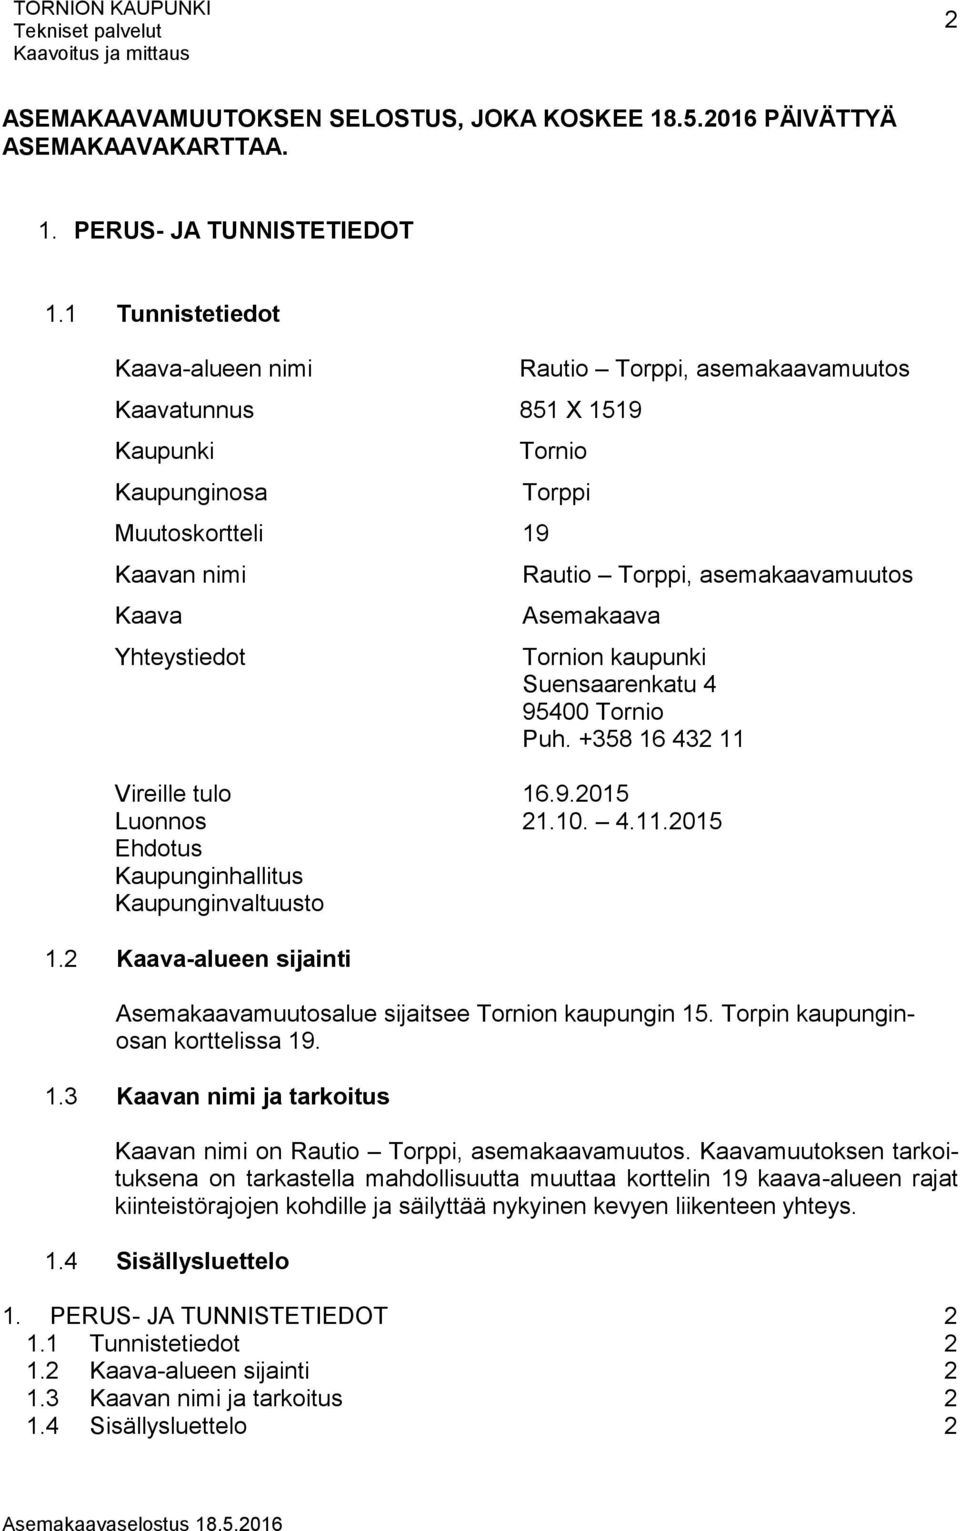 asemakaavamuutos Asemakaava Tornion kaupunki Suensaarenkatu 4 95400 Tornio Puh. +358 16 432 11 Vireille tulo 16.9.2015 Luonnos 21.10. 4.11.2015 Ehdotus Kaupunginhallitus Kaupunginvaltuusto 1.